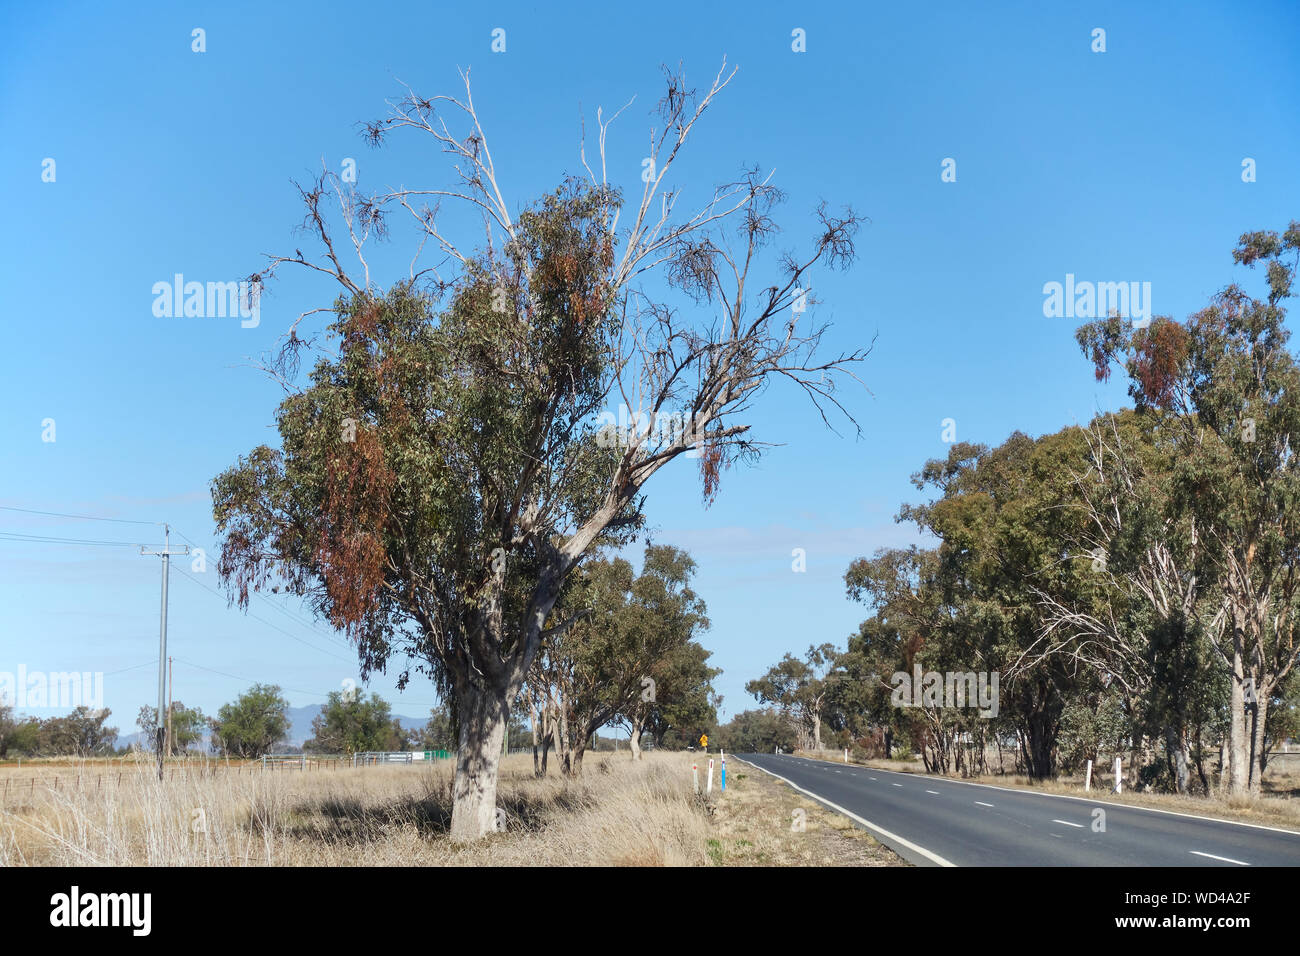 Arbre d'eucalyptus mourant d'une infestation de plantes de GUI parasitaires qui meurent aussi avec l'arbre. Tamworth Australie. Banque D'Images